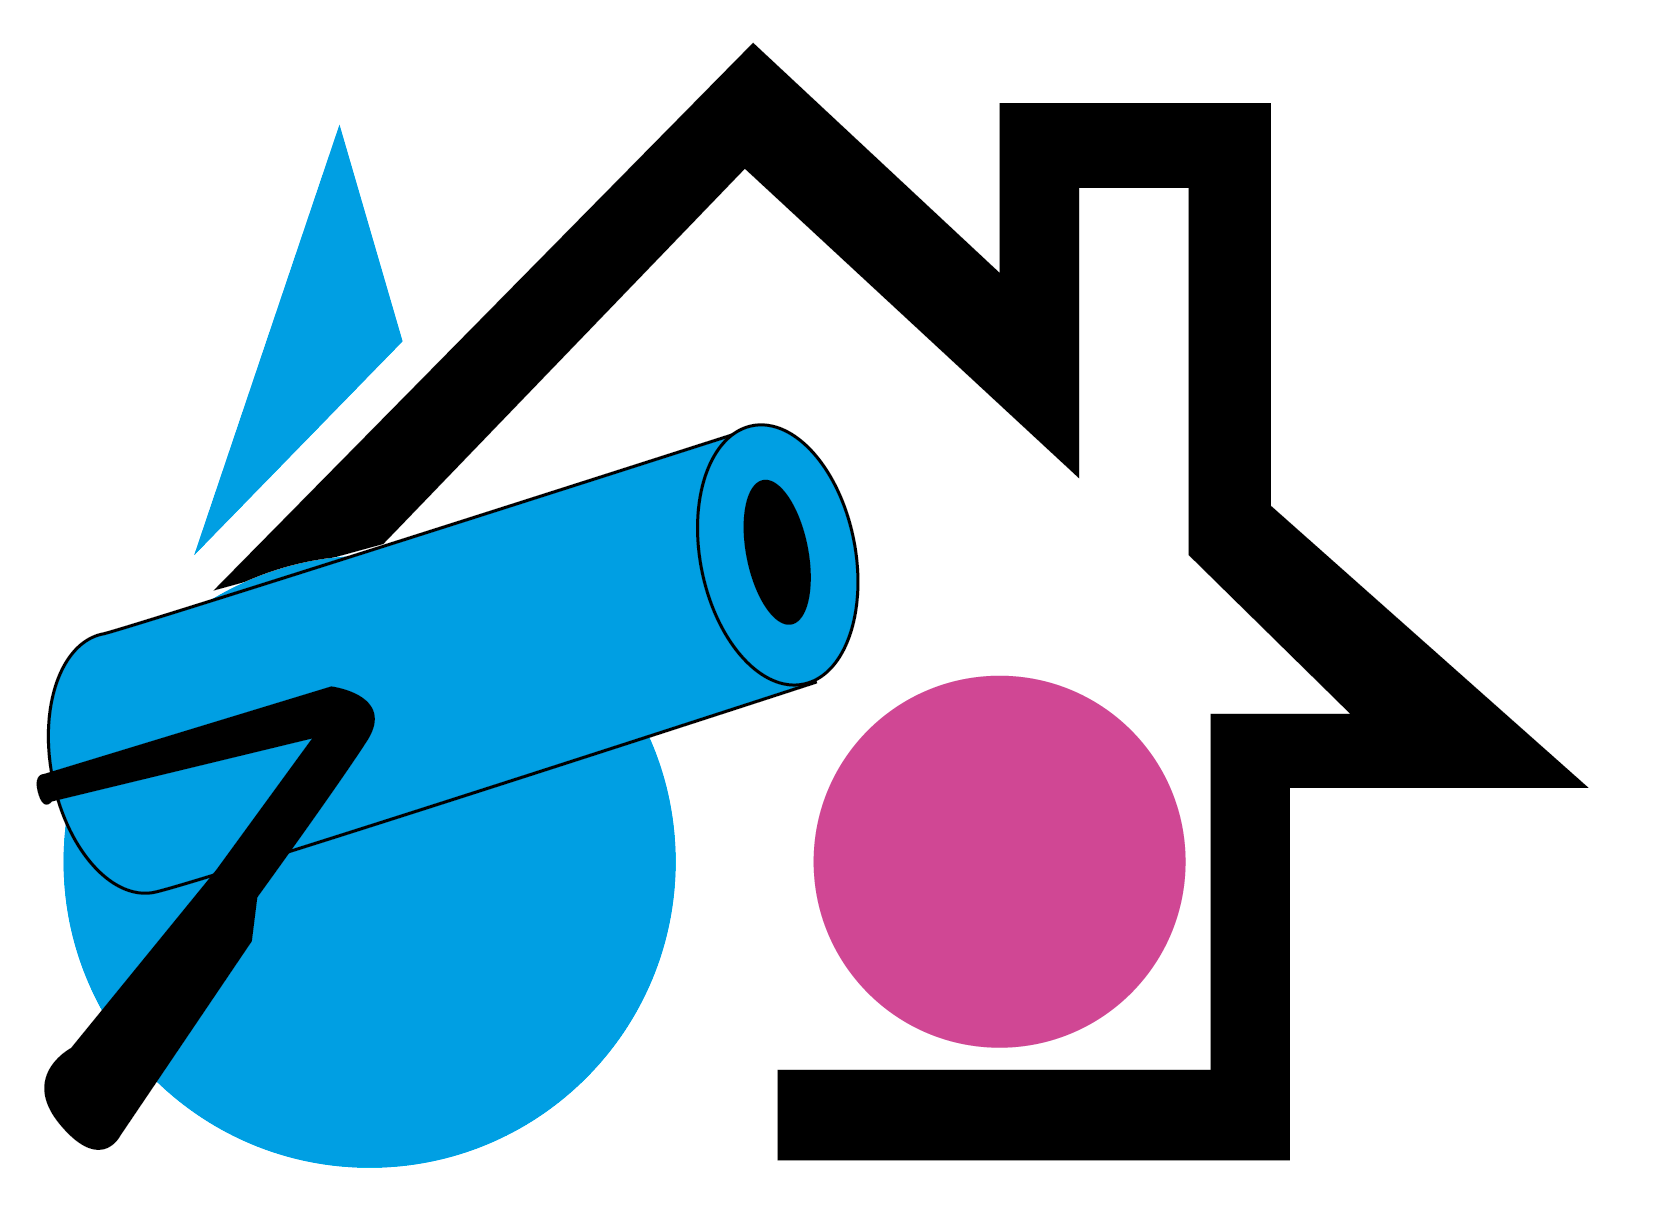 Desveaux - Logo image